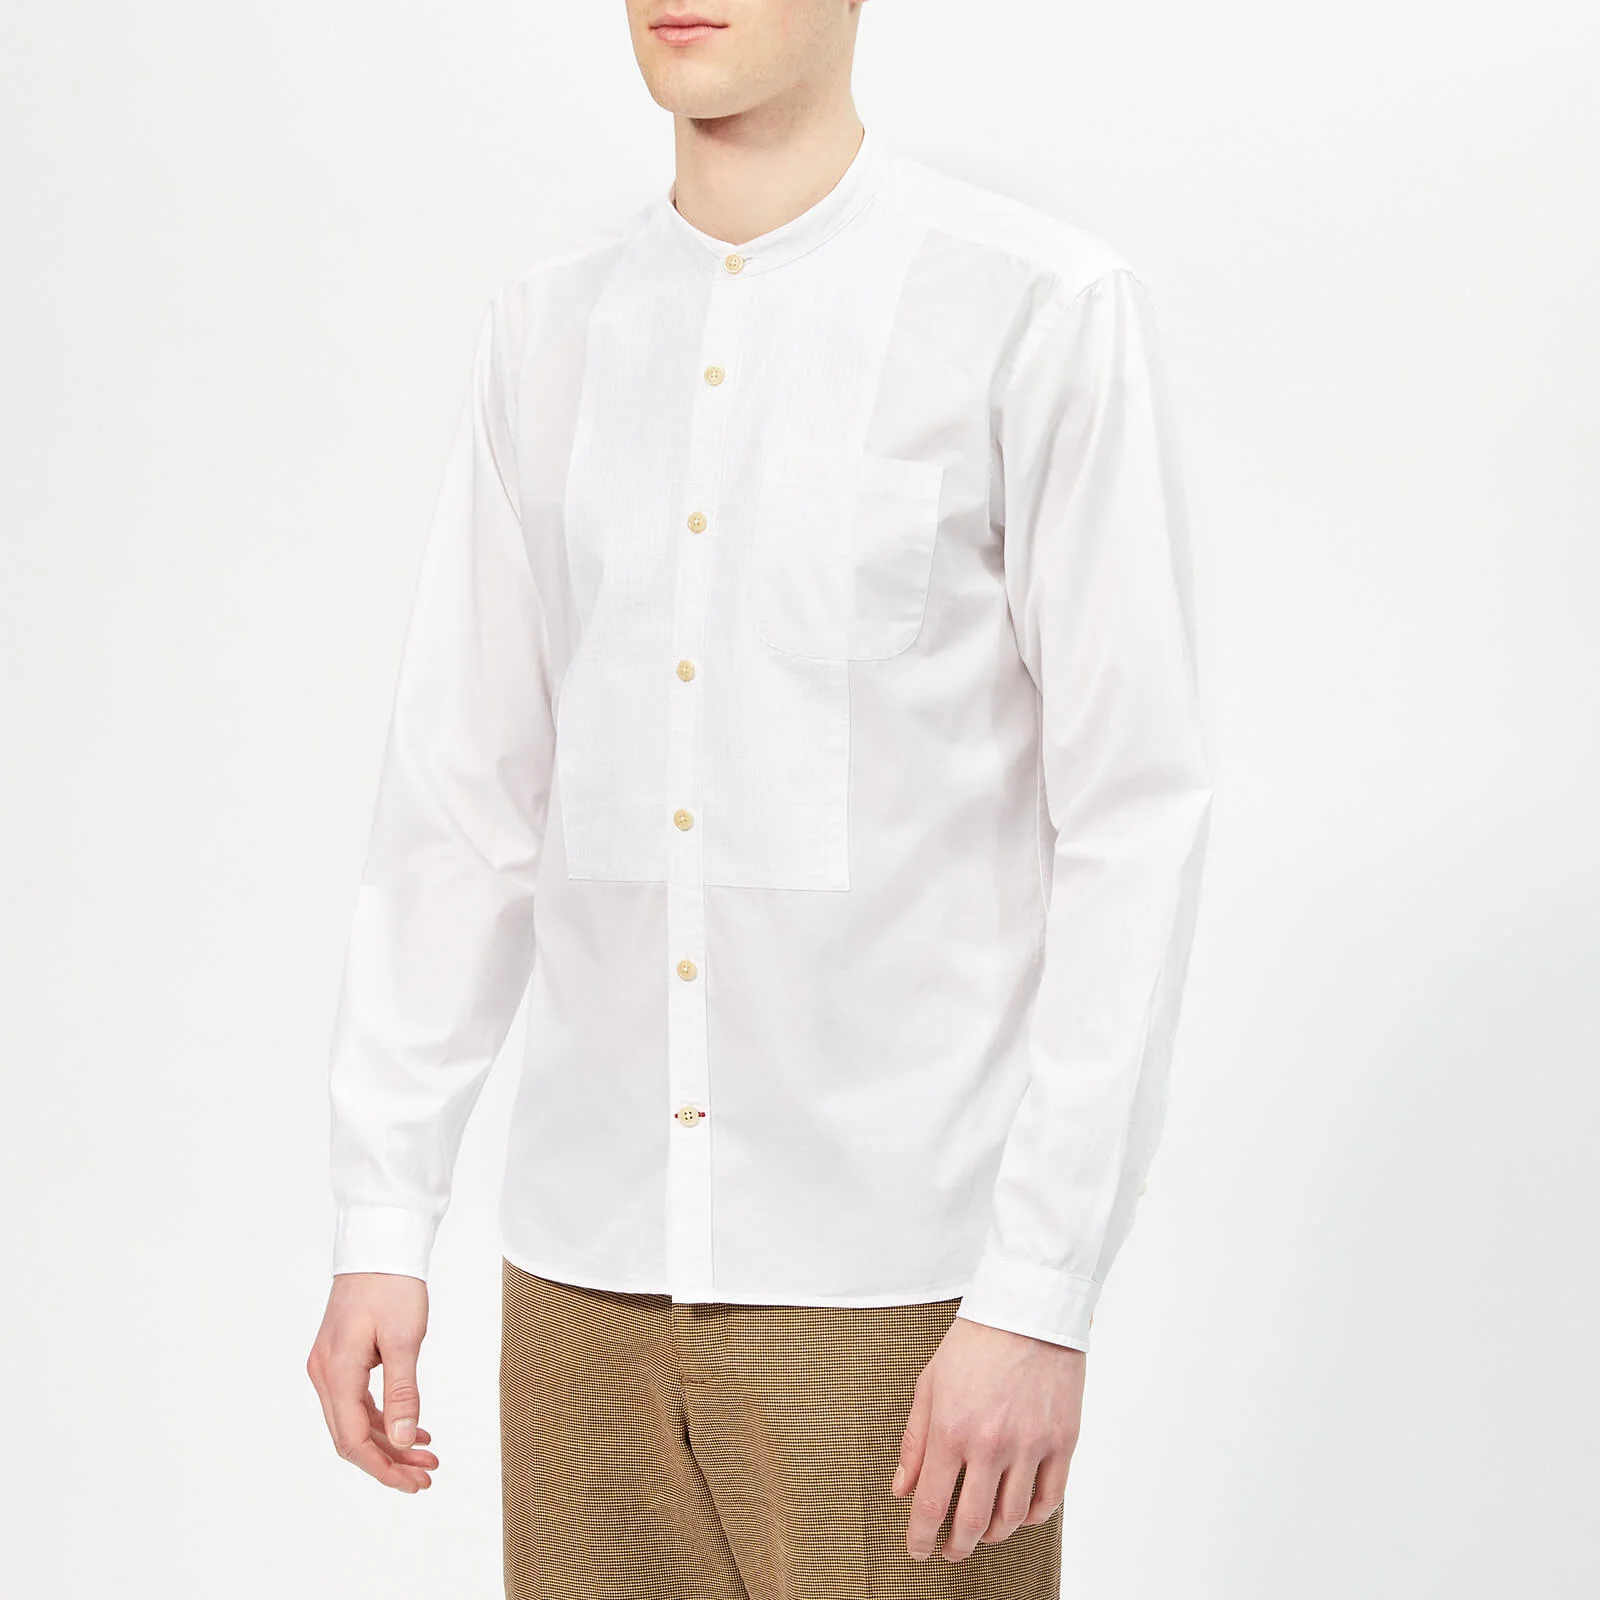 Oliver Spencer Men's Bib Grandad Shirt - Abbott White Image 1